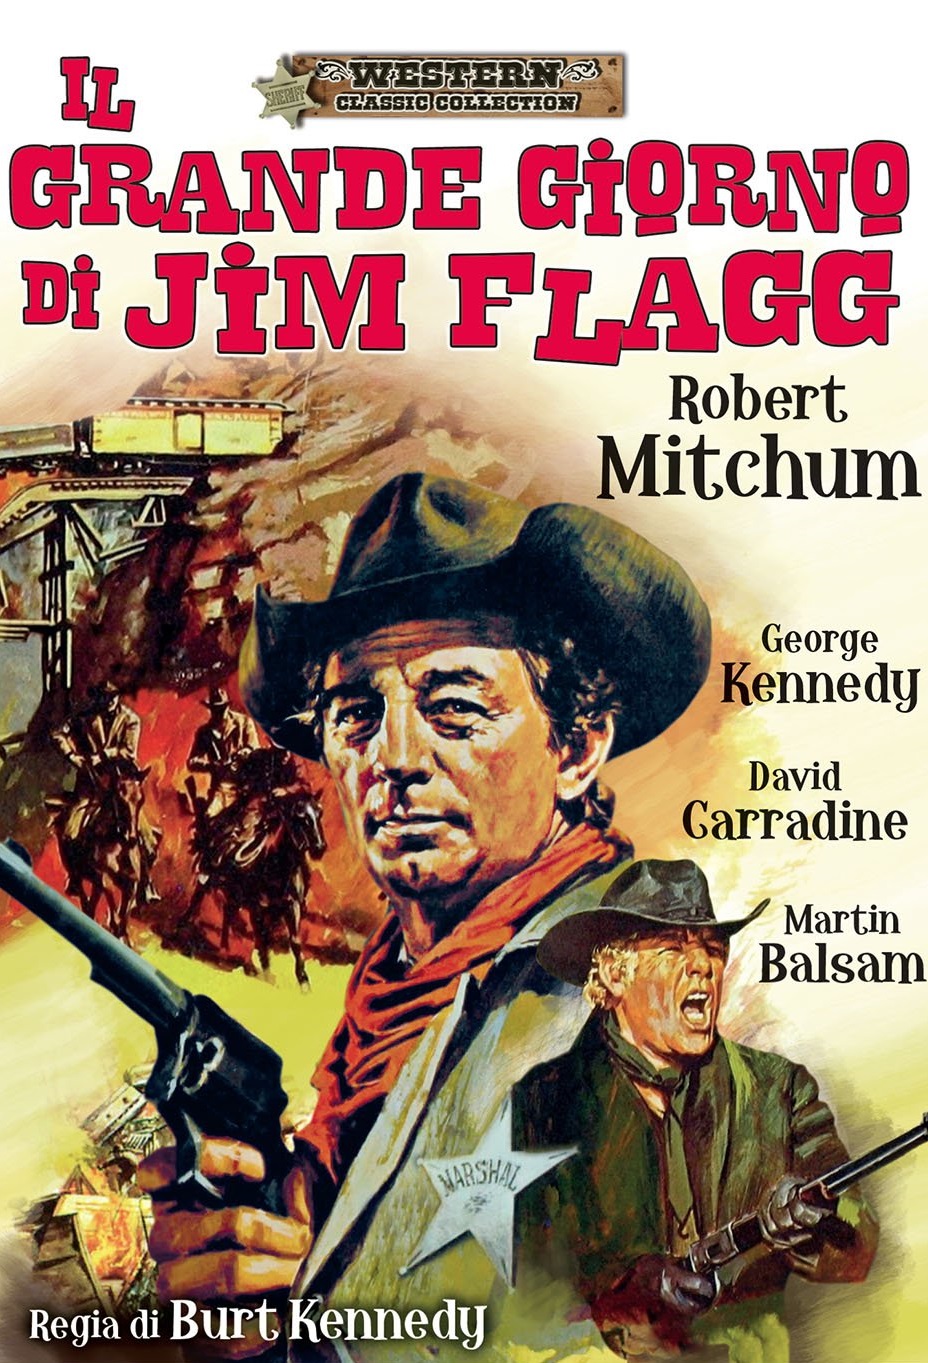 Il grande giorno di Jim Flagg (1969)